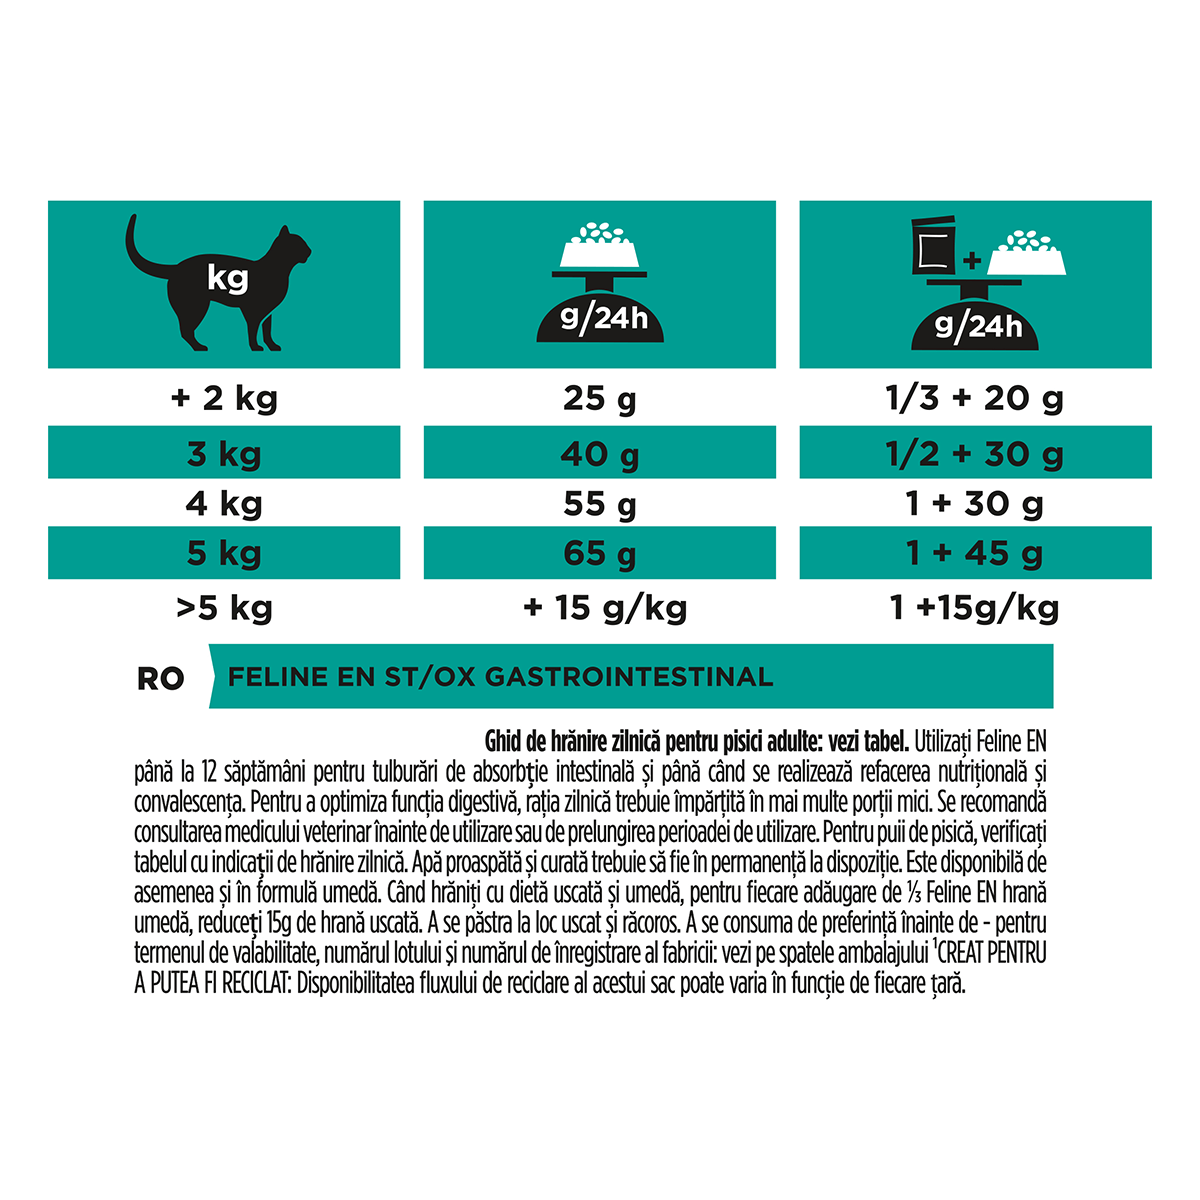 PURINA Pro Plan Veterinary Diets Gastrointestinal, dietă veterinară pisici, hrană uscată, afecțiuni digestive, 1.5kg